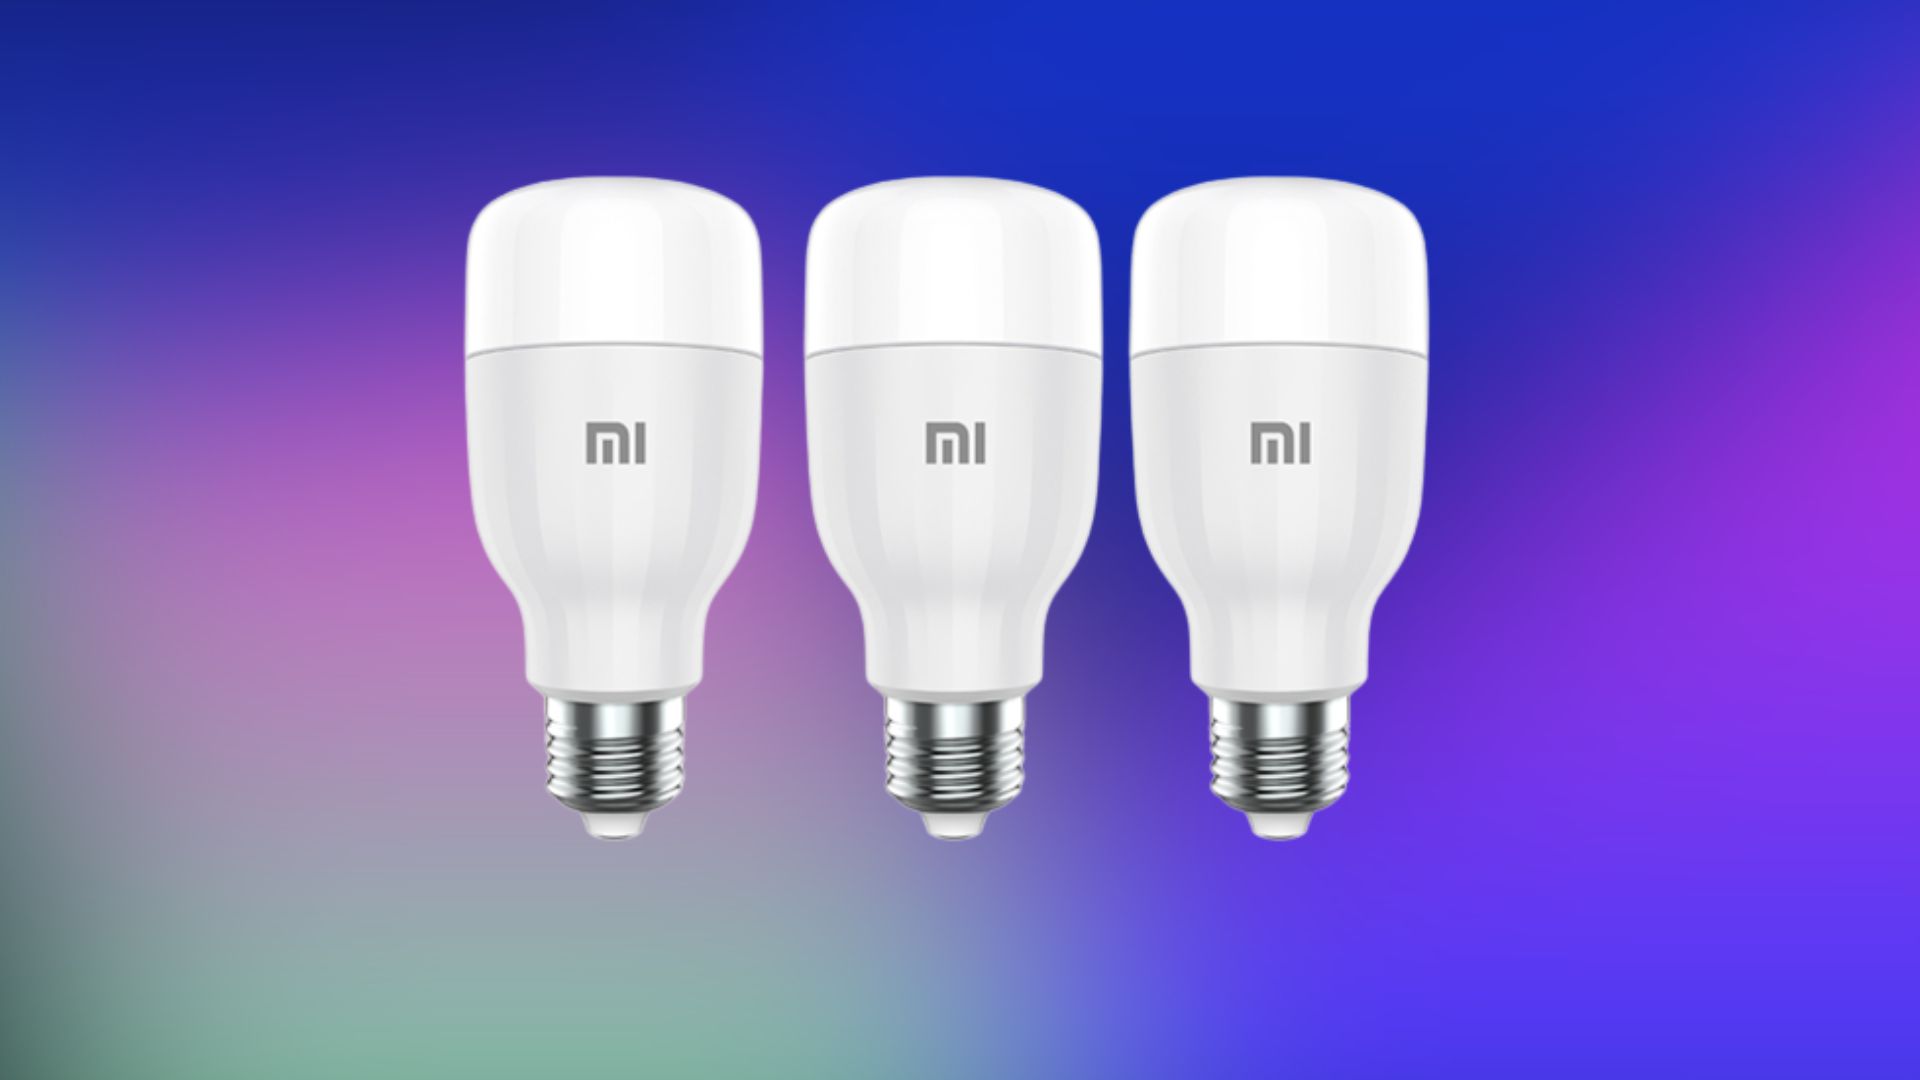 Ampoule LED Xiaomi Mi Smart LED Bulb / Blanc Chaud